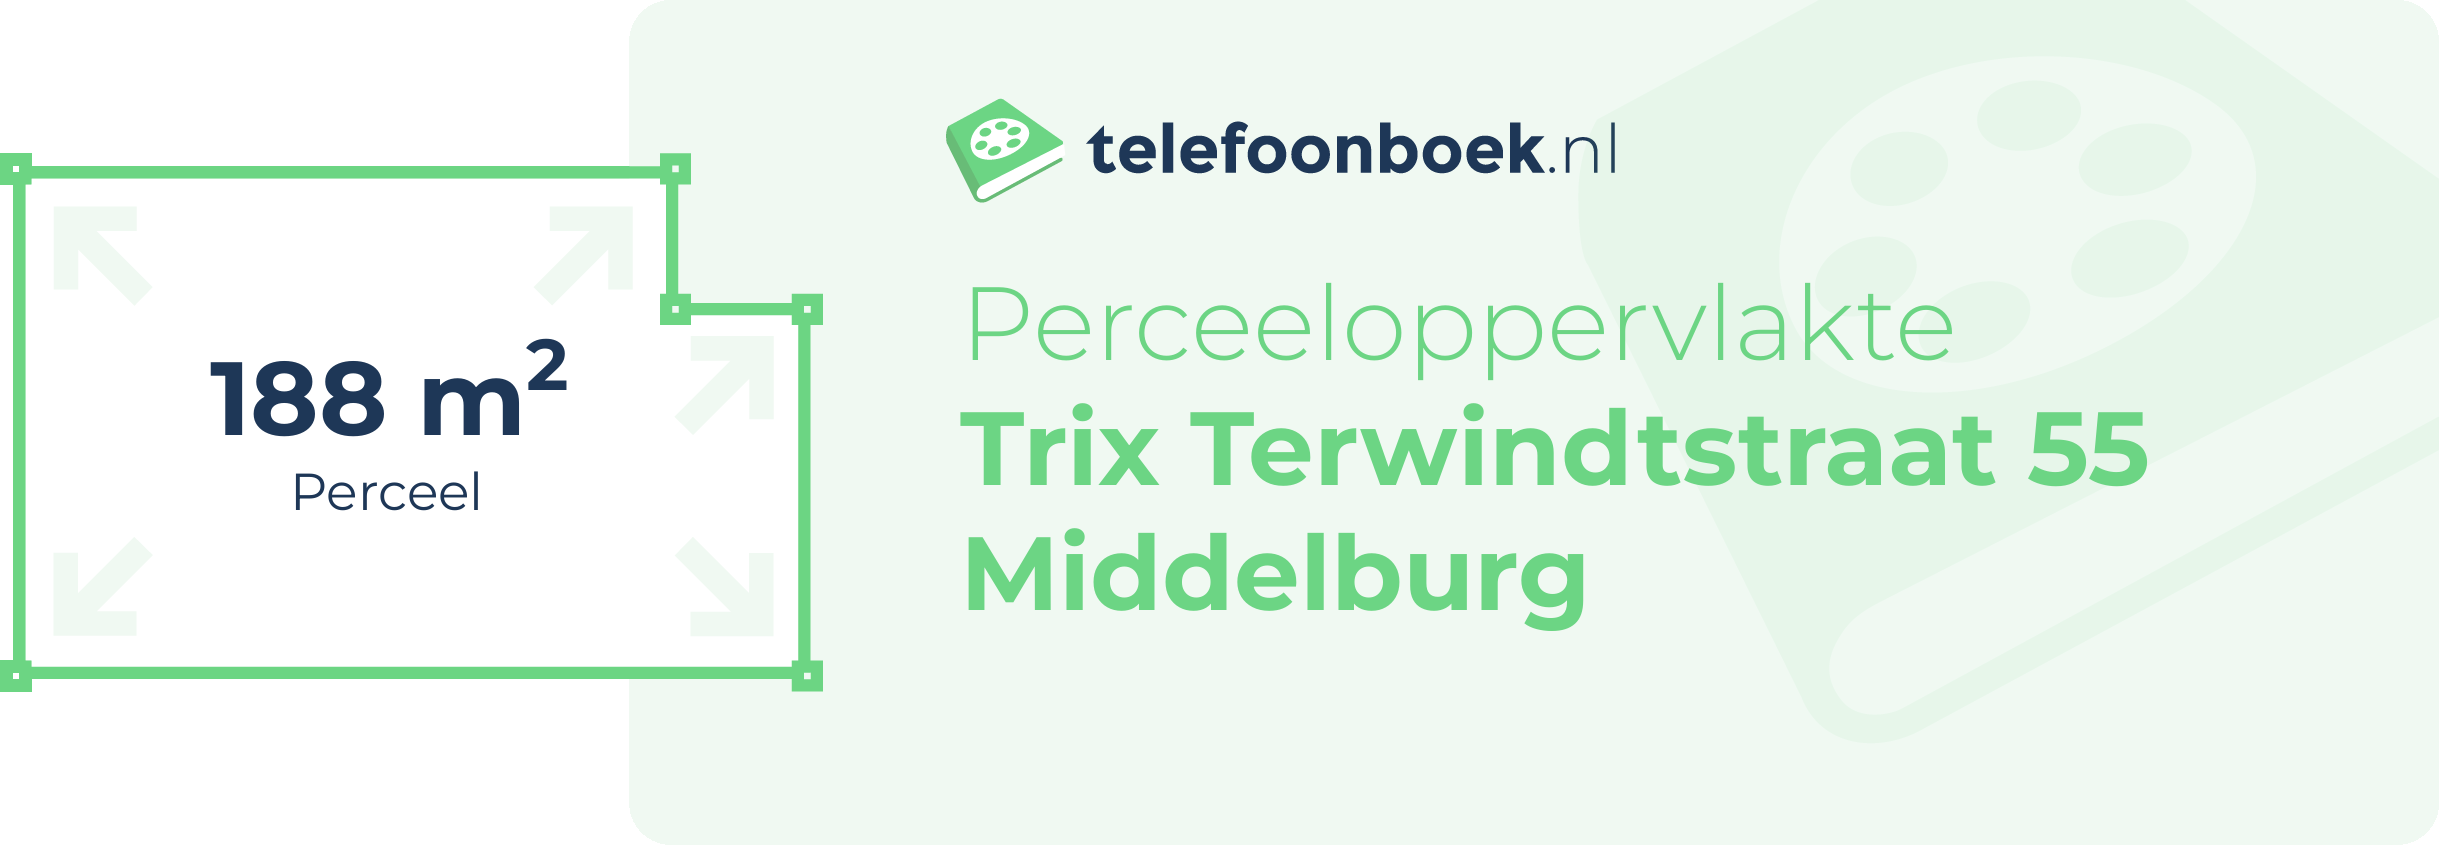 Perceeloppervlakte Trix Terwindtstraat 55 Middelburg